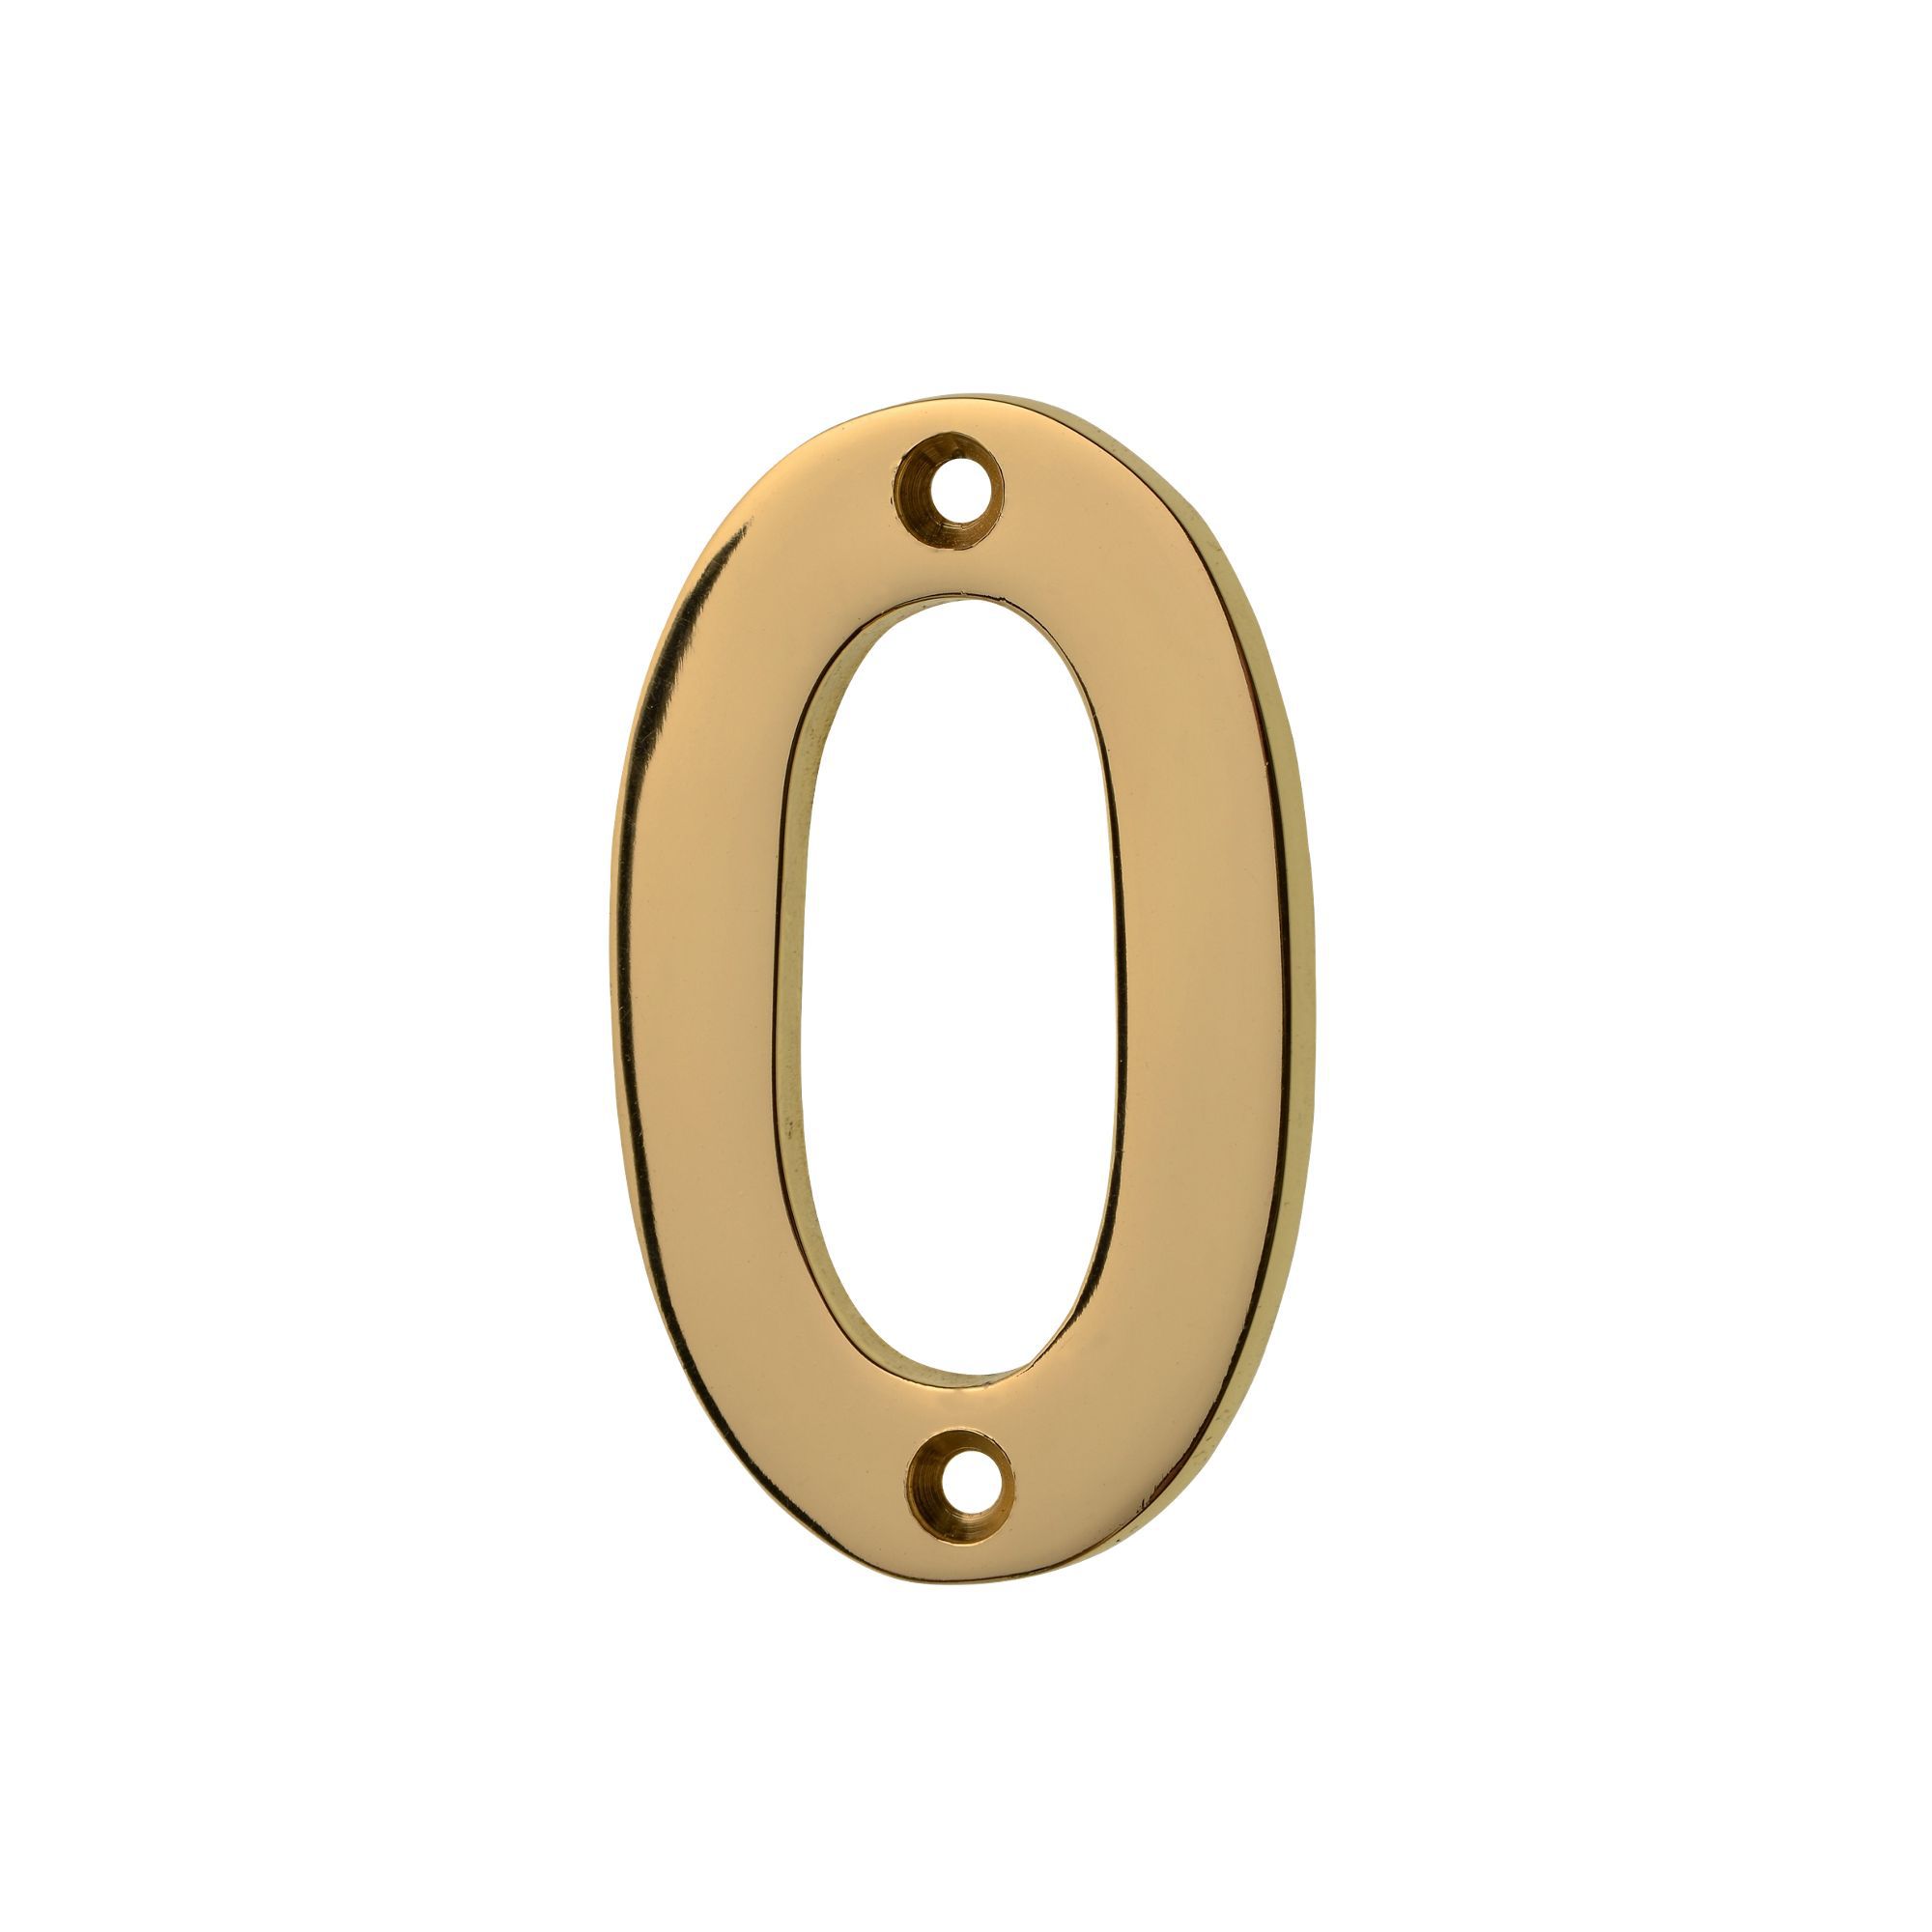 Image of Wickes Door Number 0 - Brass